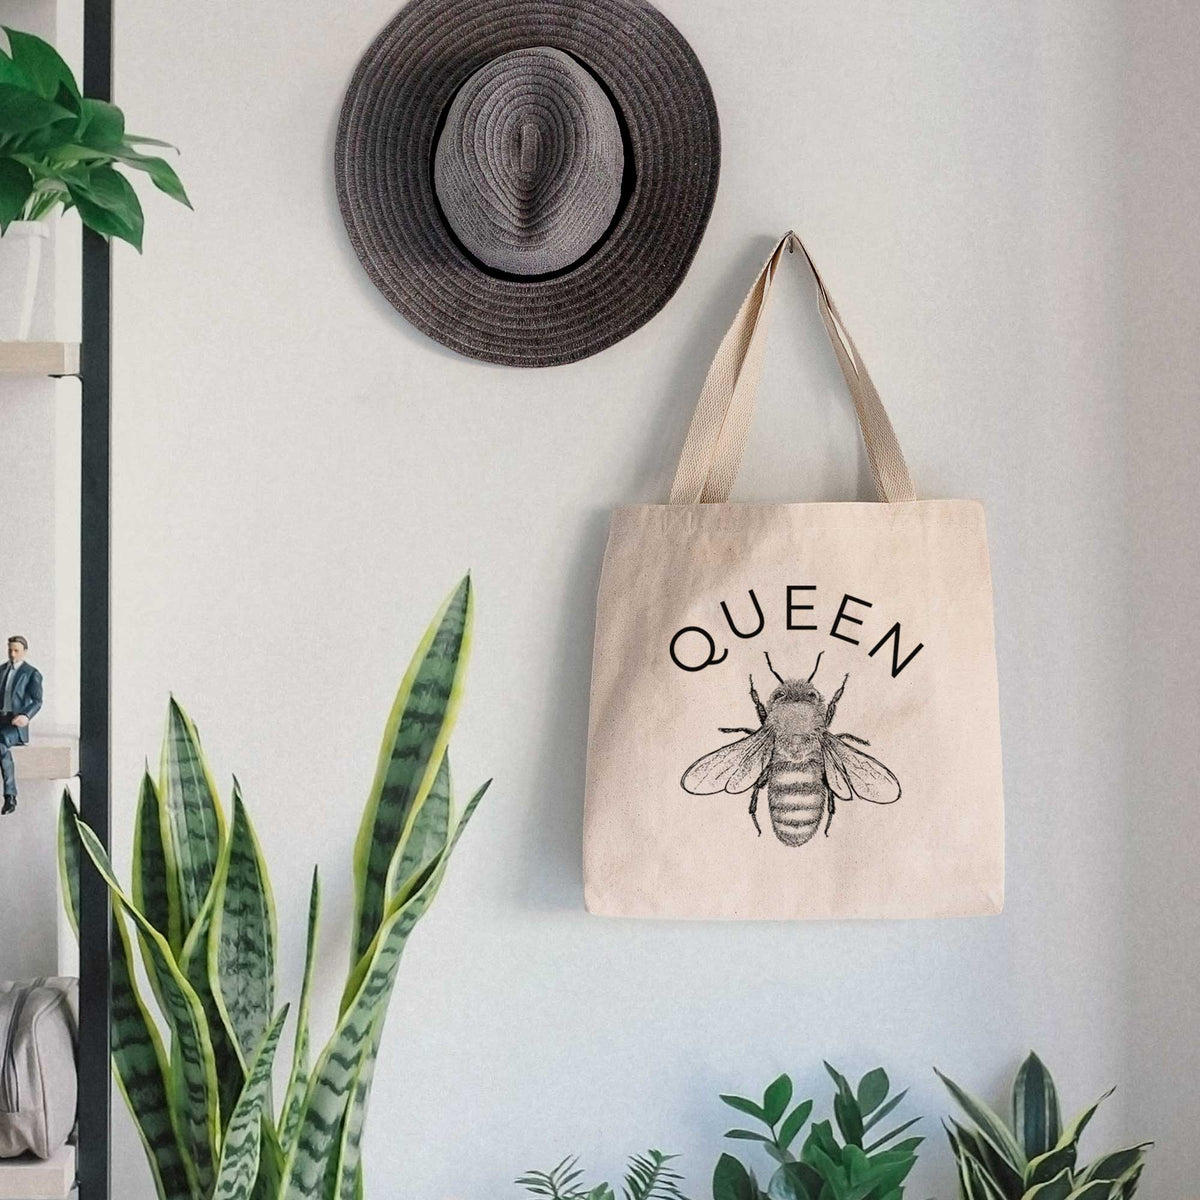 Queen Bee - Tote Bag